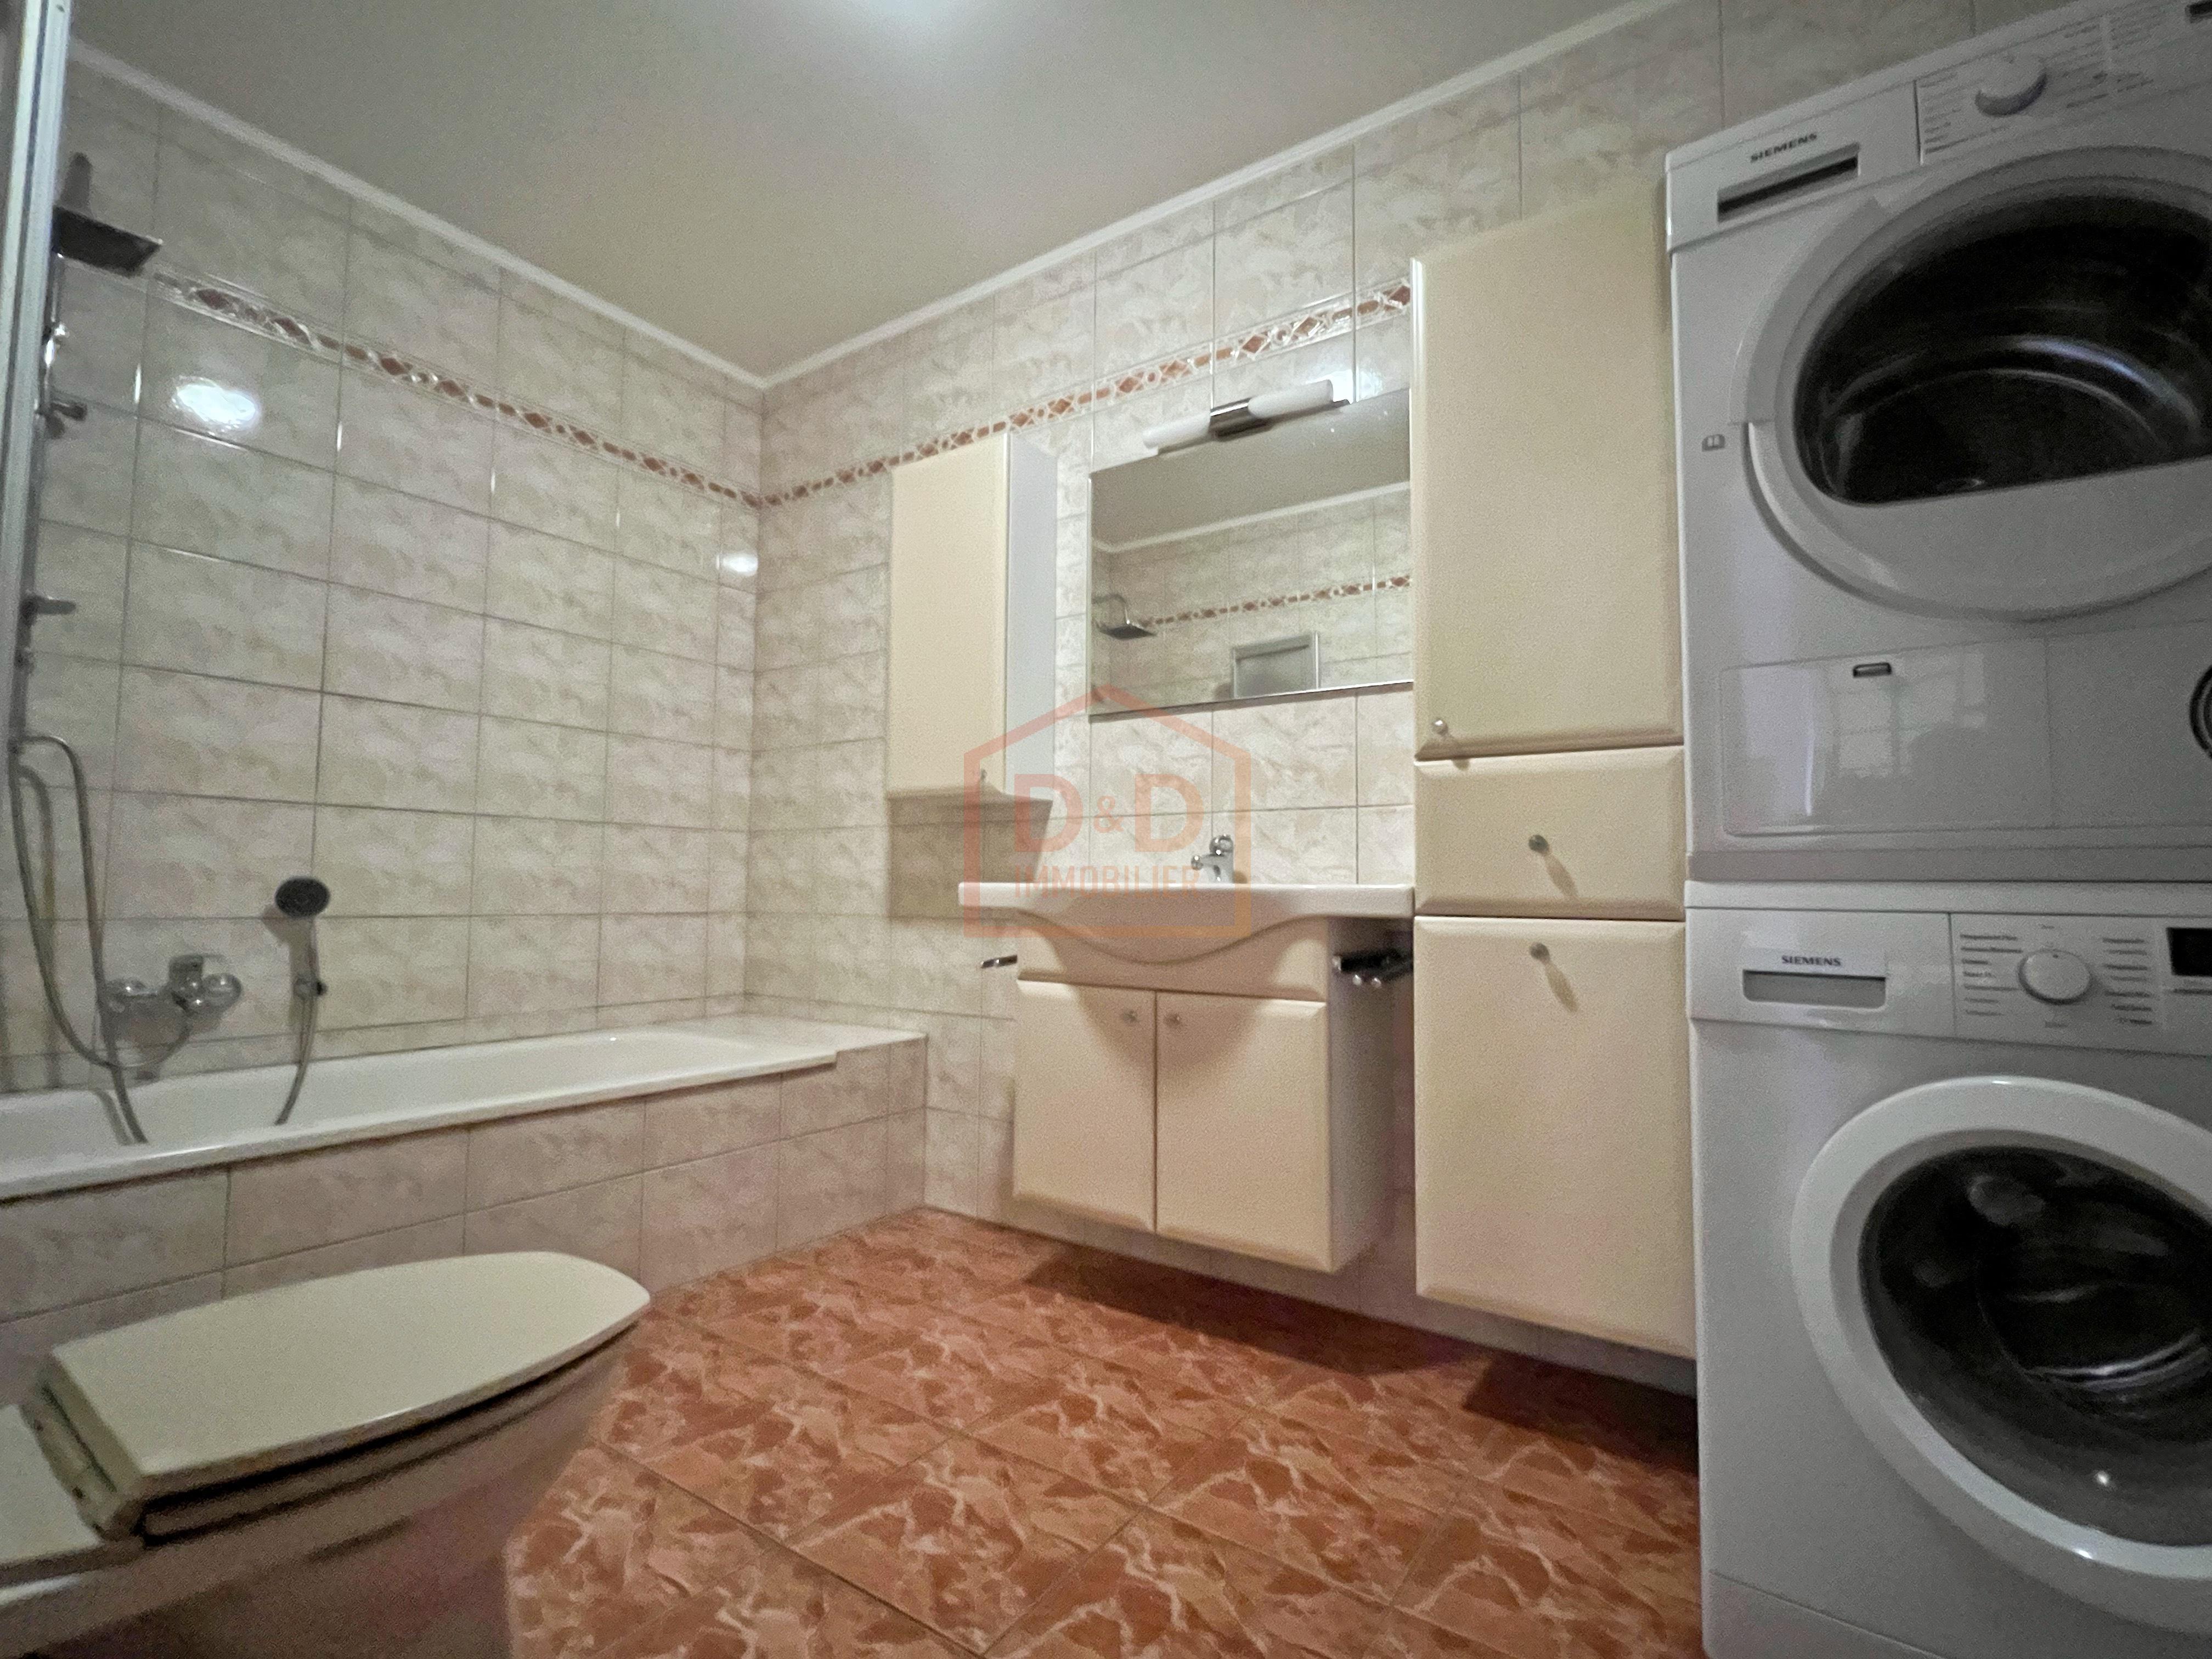 Appartement à Frisange, 92 m², 2 chambres, 1 salle de bain, 1 garage, 760 000 €